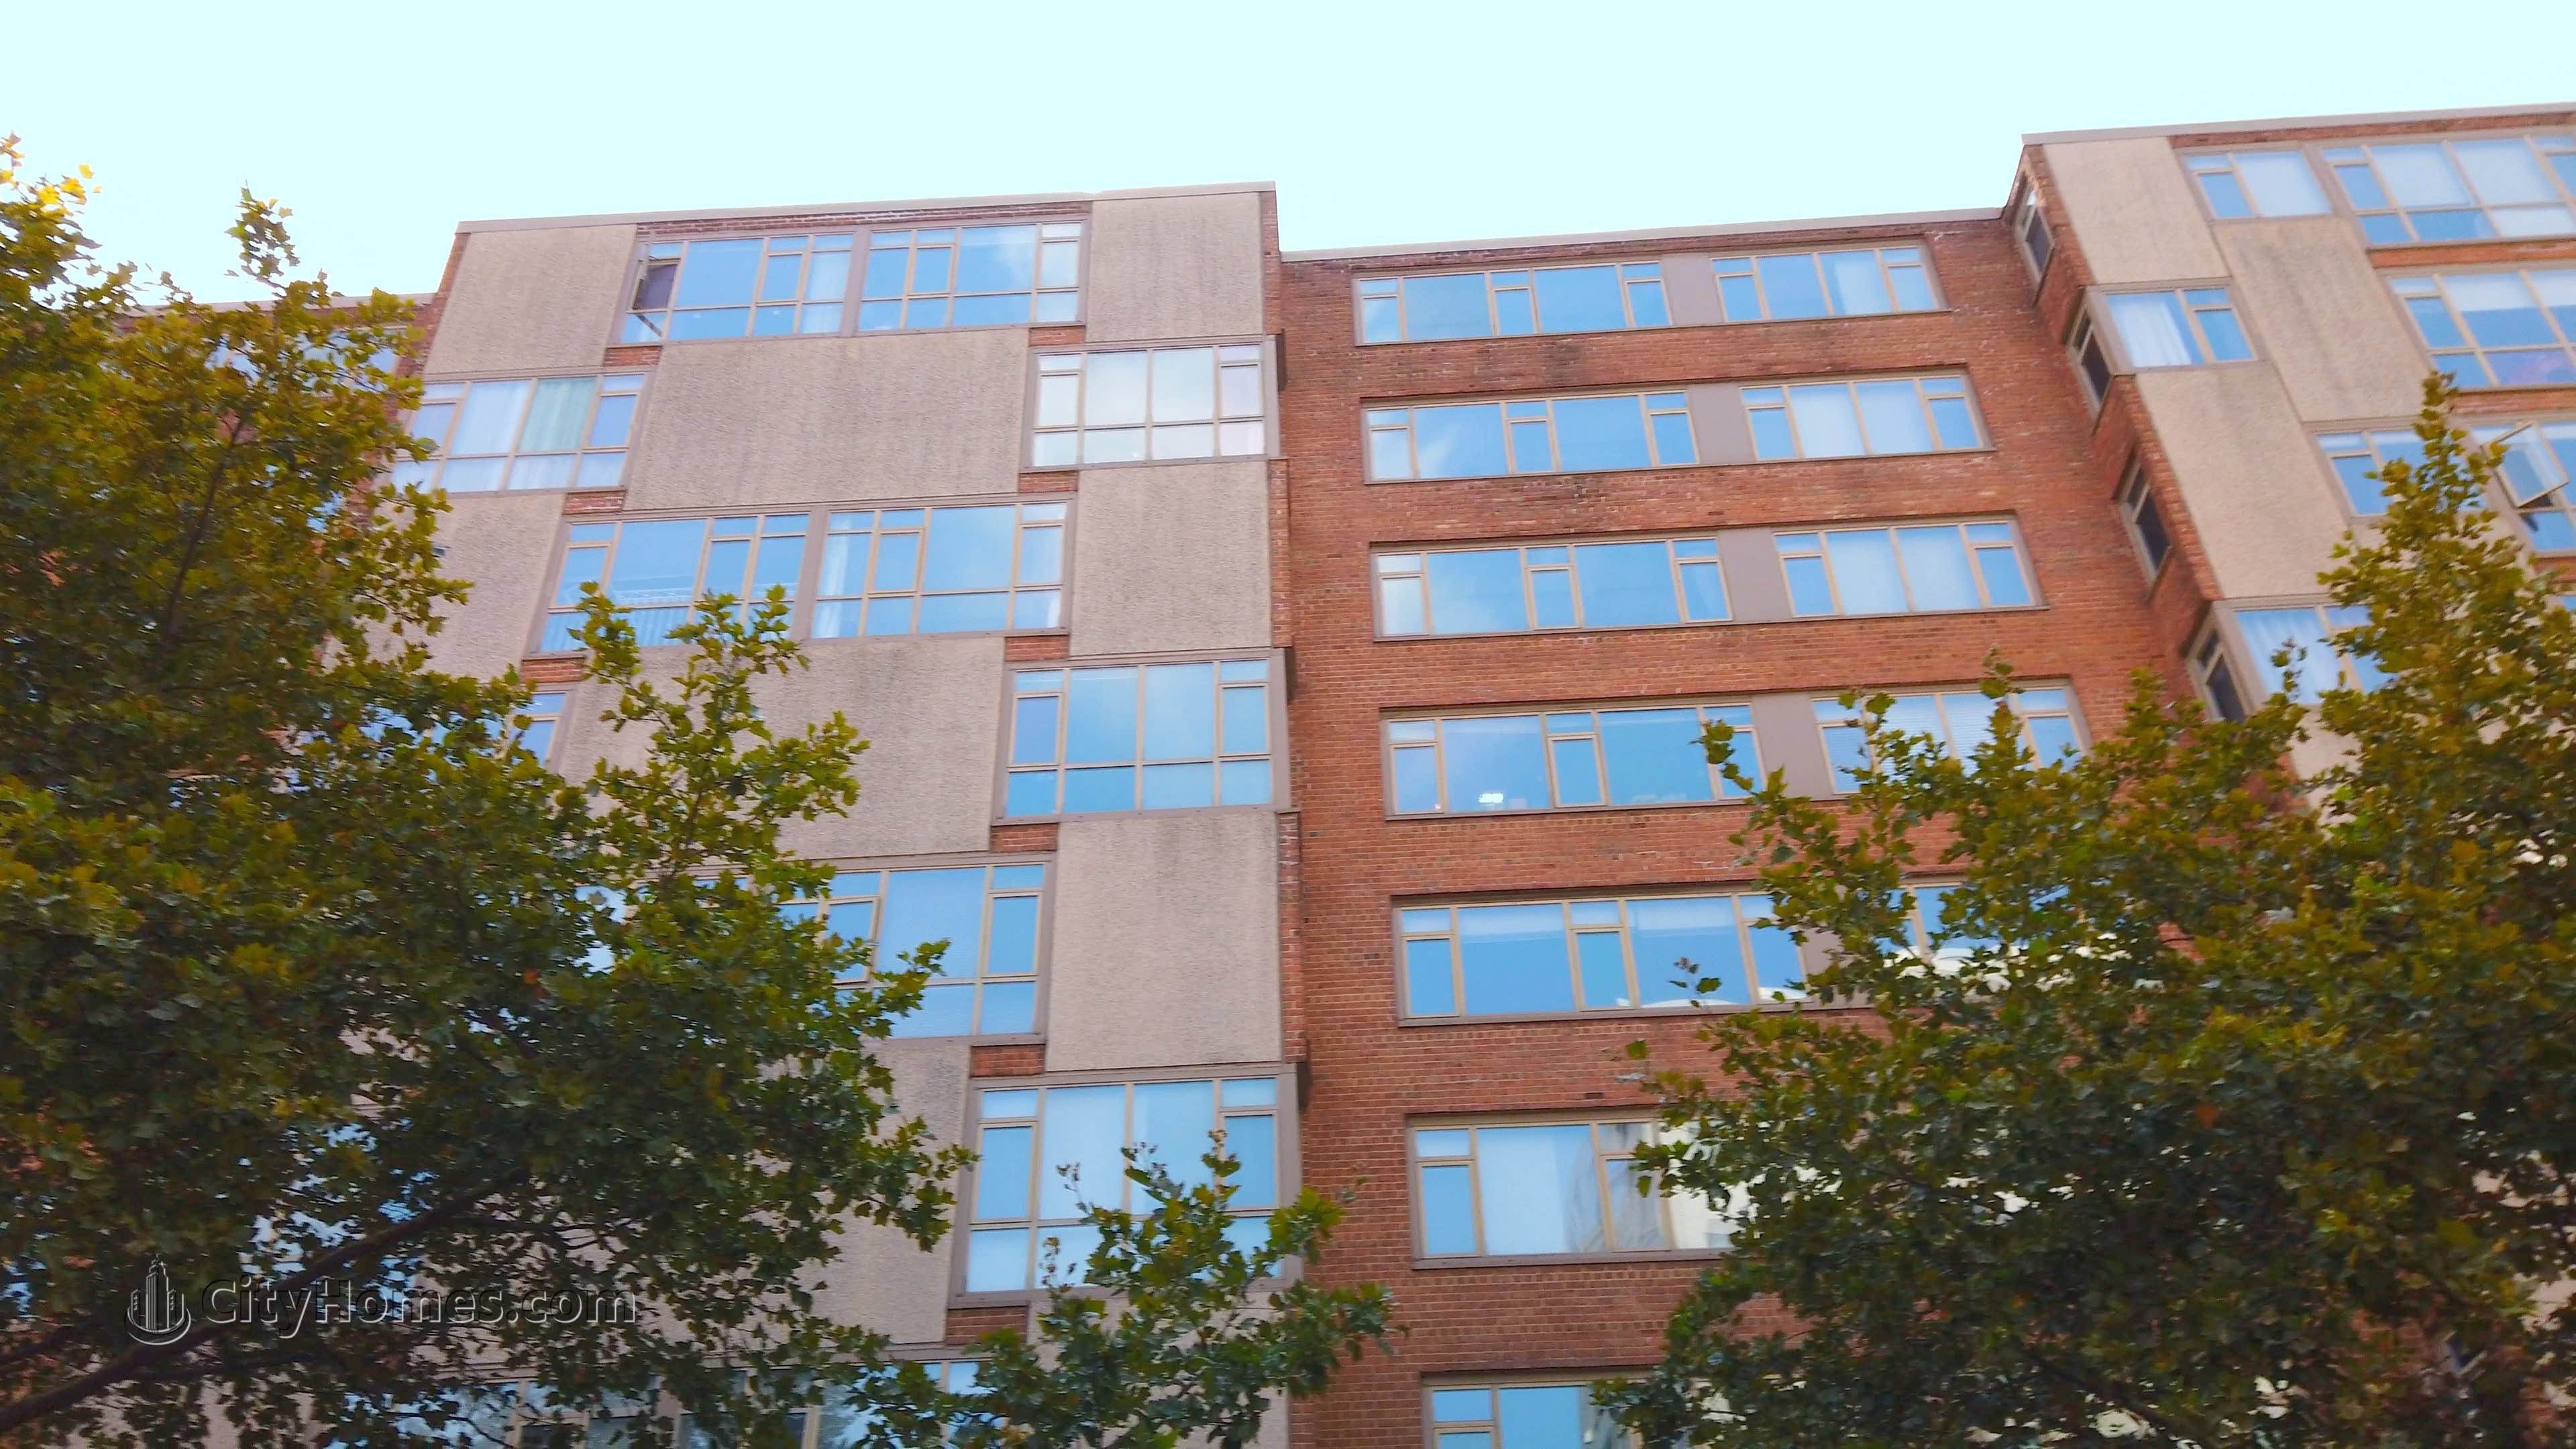 5. Dupont East building at 1545 18th St NW, Dupont Circle, Washington, DC 20036